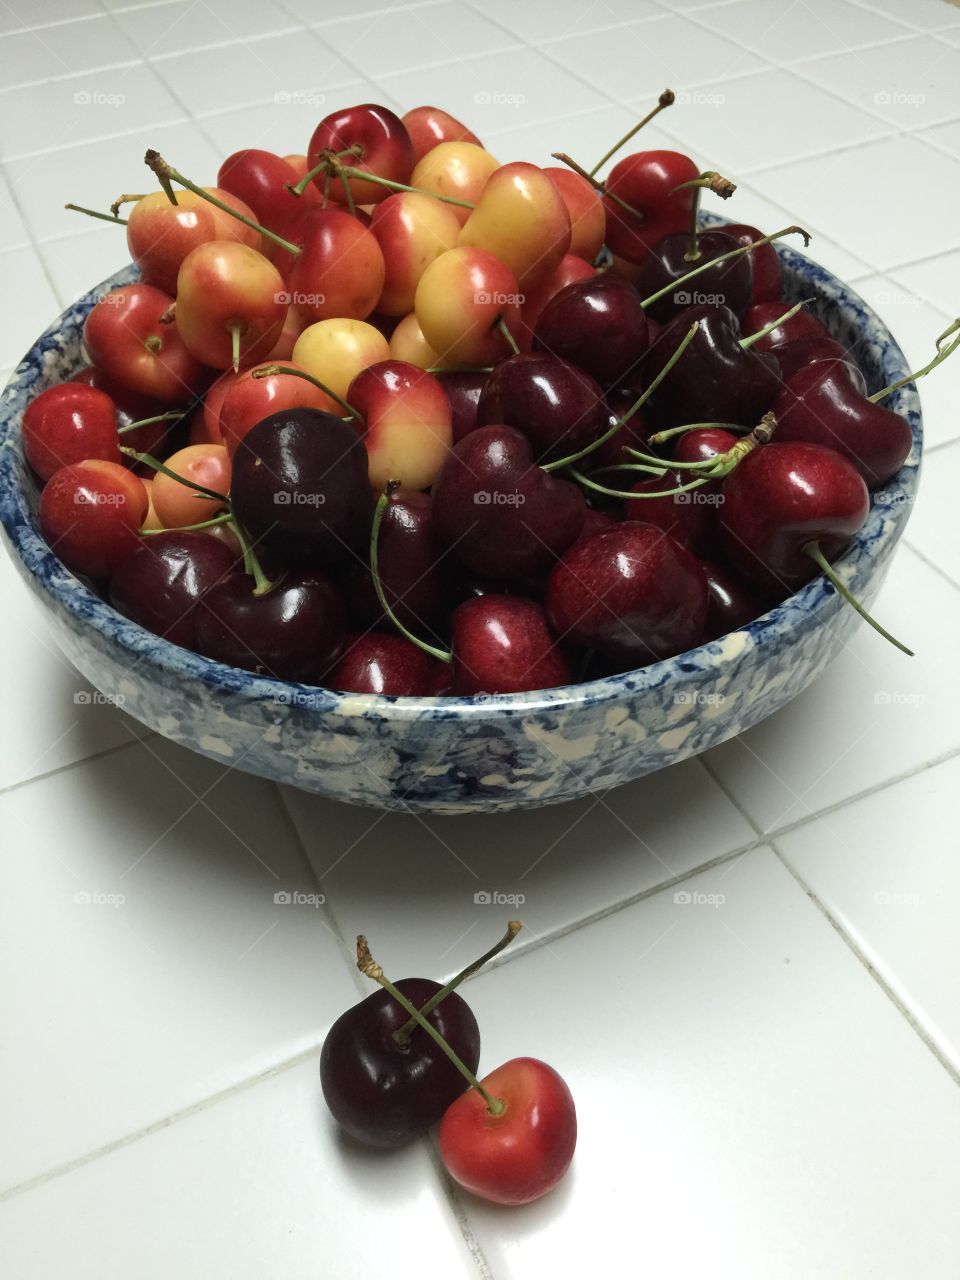 More Cherries